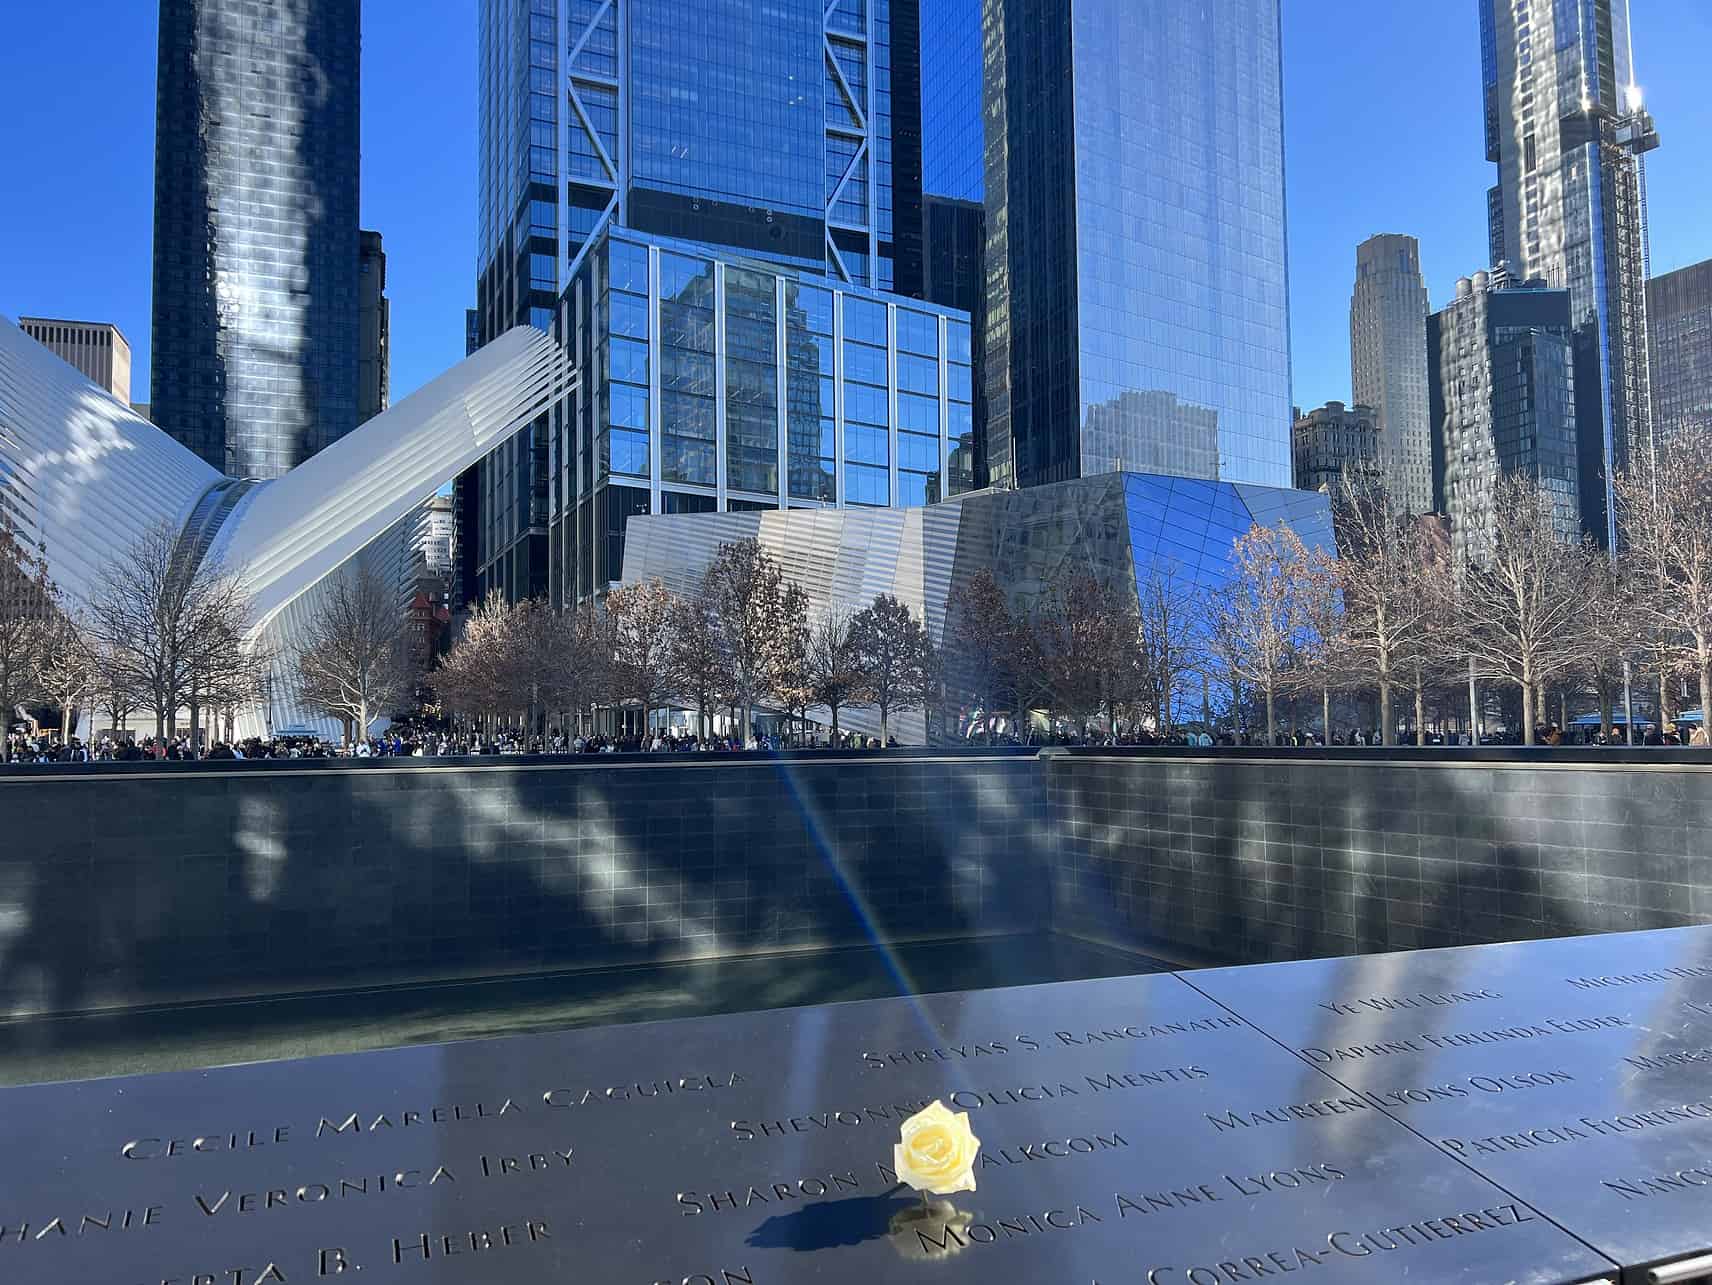 Eine weiße Blumen für die Opfer am Geburtstag - 9/11 Memorial in New York City, USA.